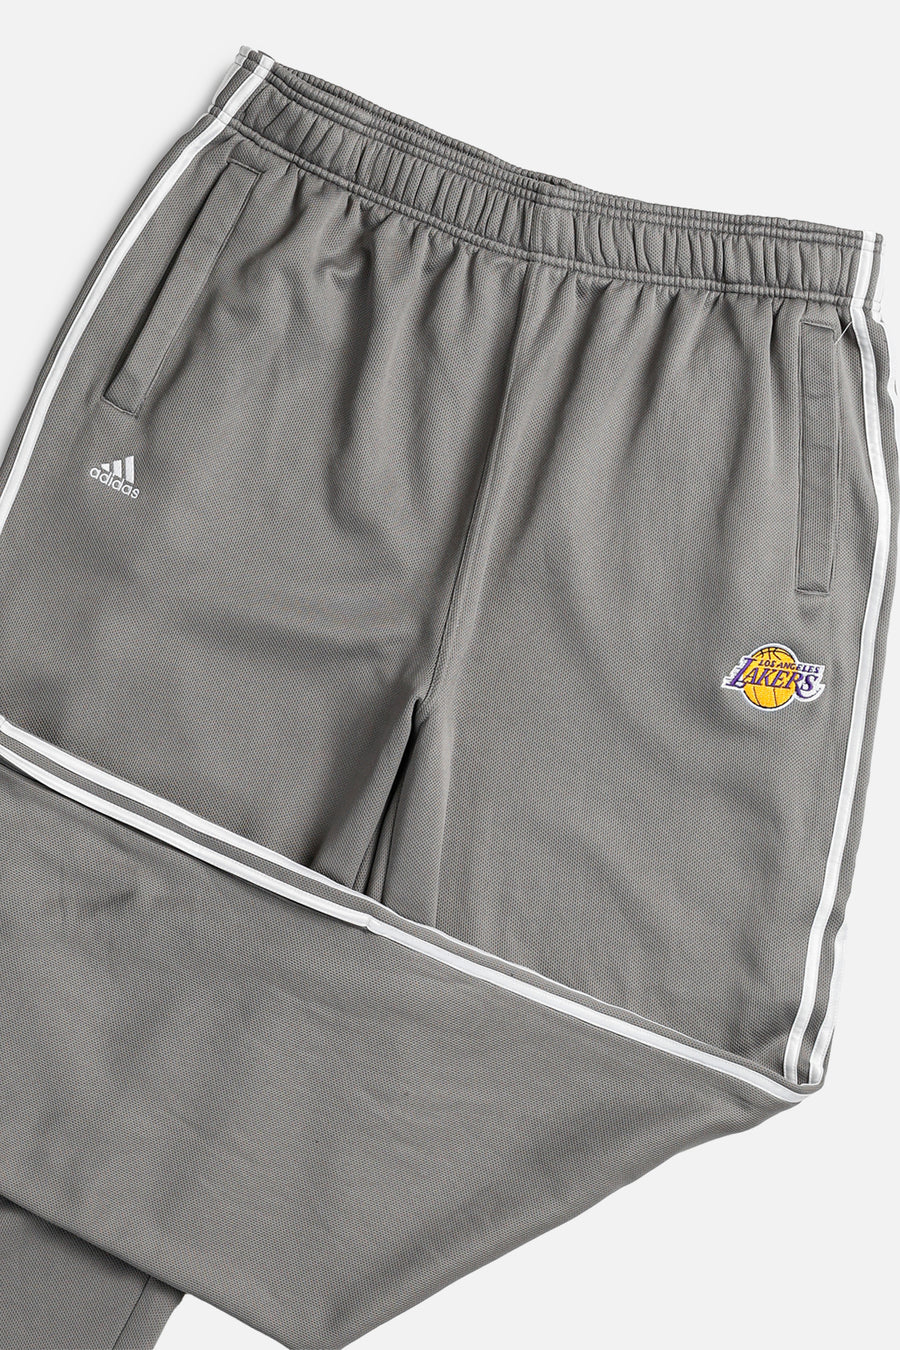 Vintage Adidas LA Lakers Track Pants - XXL